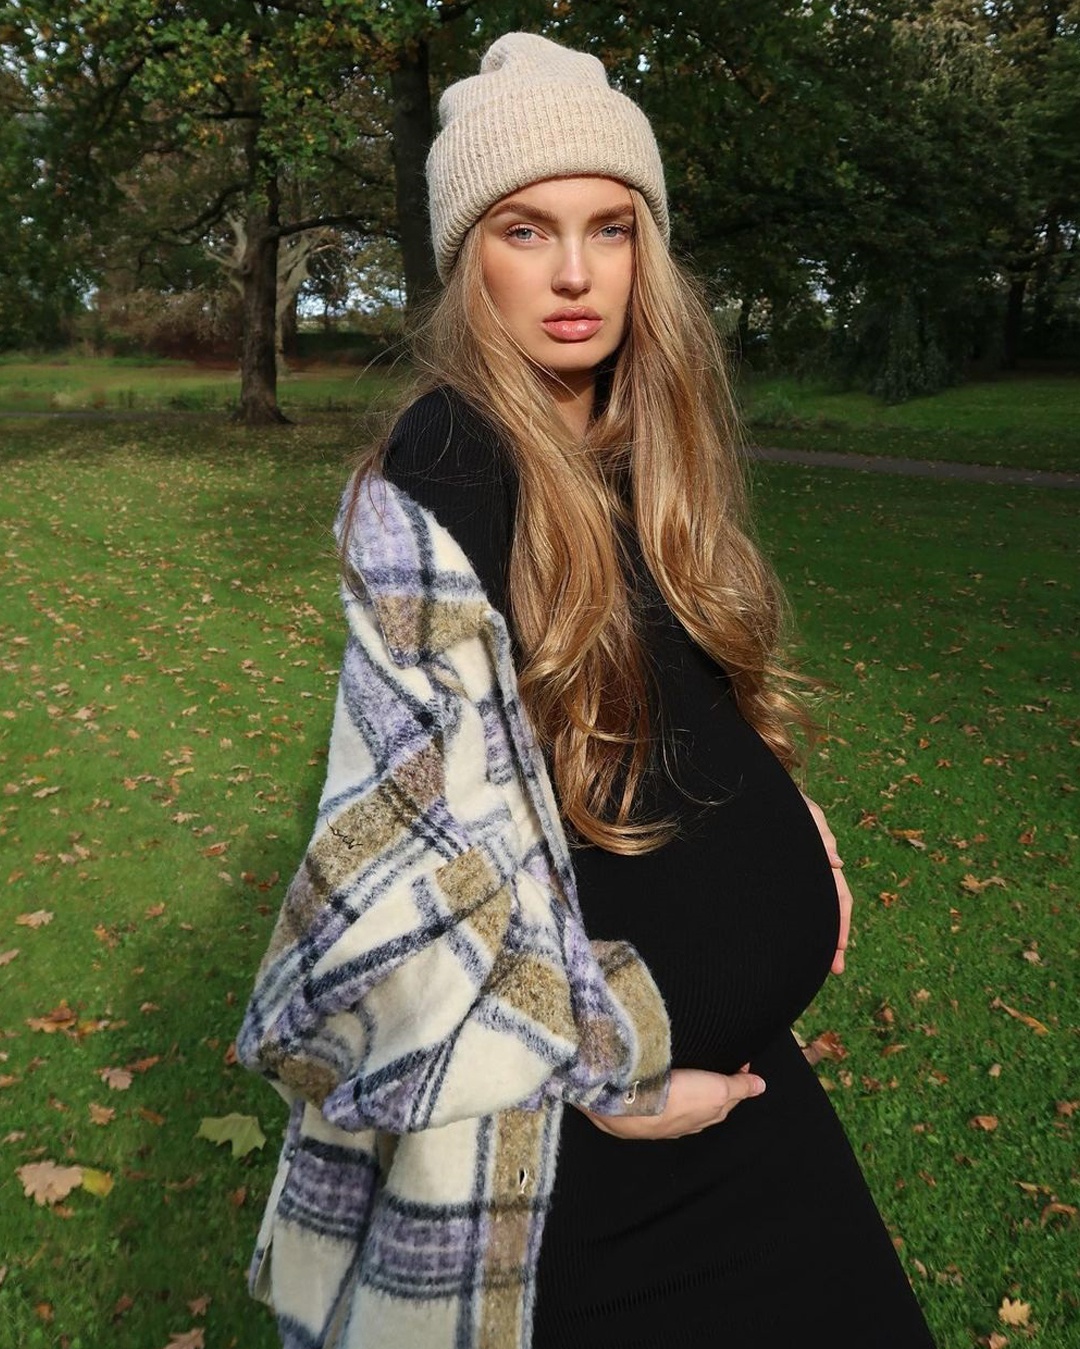 Dù mang thai, Romee Strijd vẫn chuộng những mẫu đầm ôm body. Nữ người mẫu gốc Hà Lan thích chất liệu thun co giãn, mát mẻ dù là đồ đông hay hè.